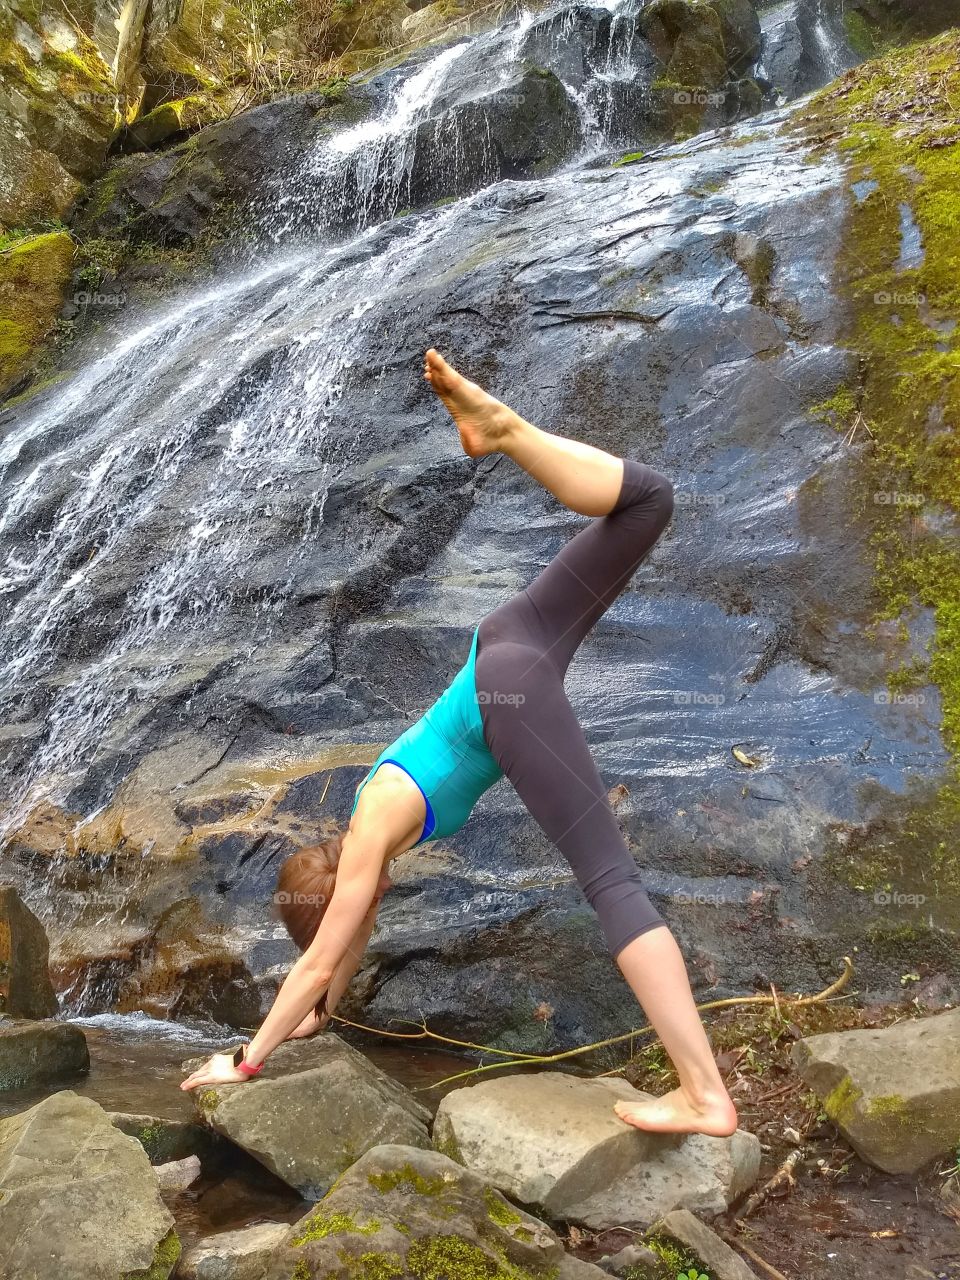 waterfall yoga